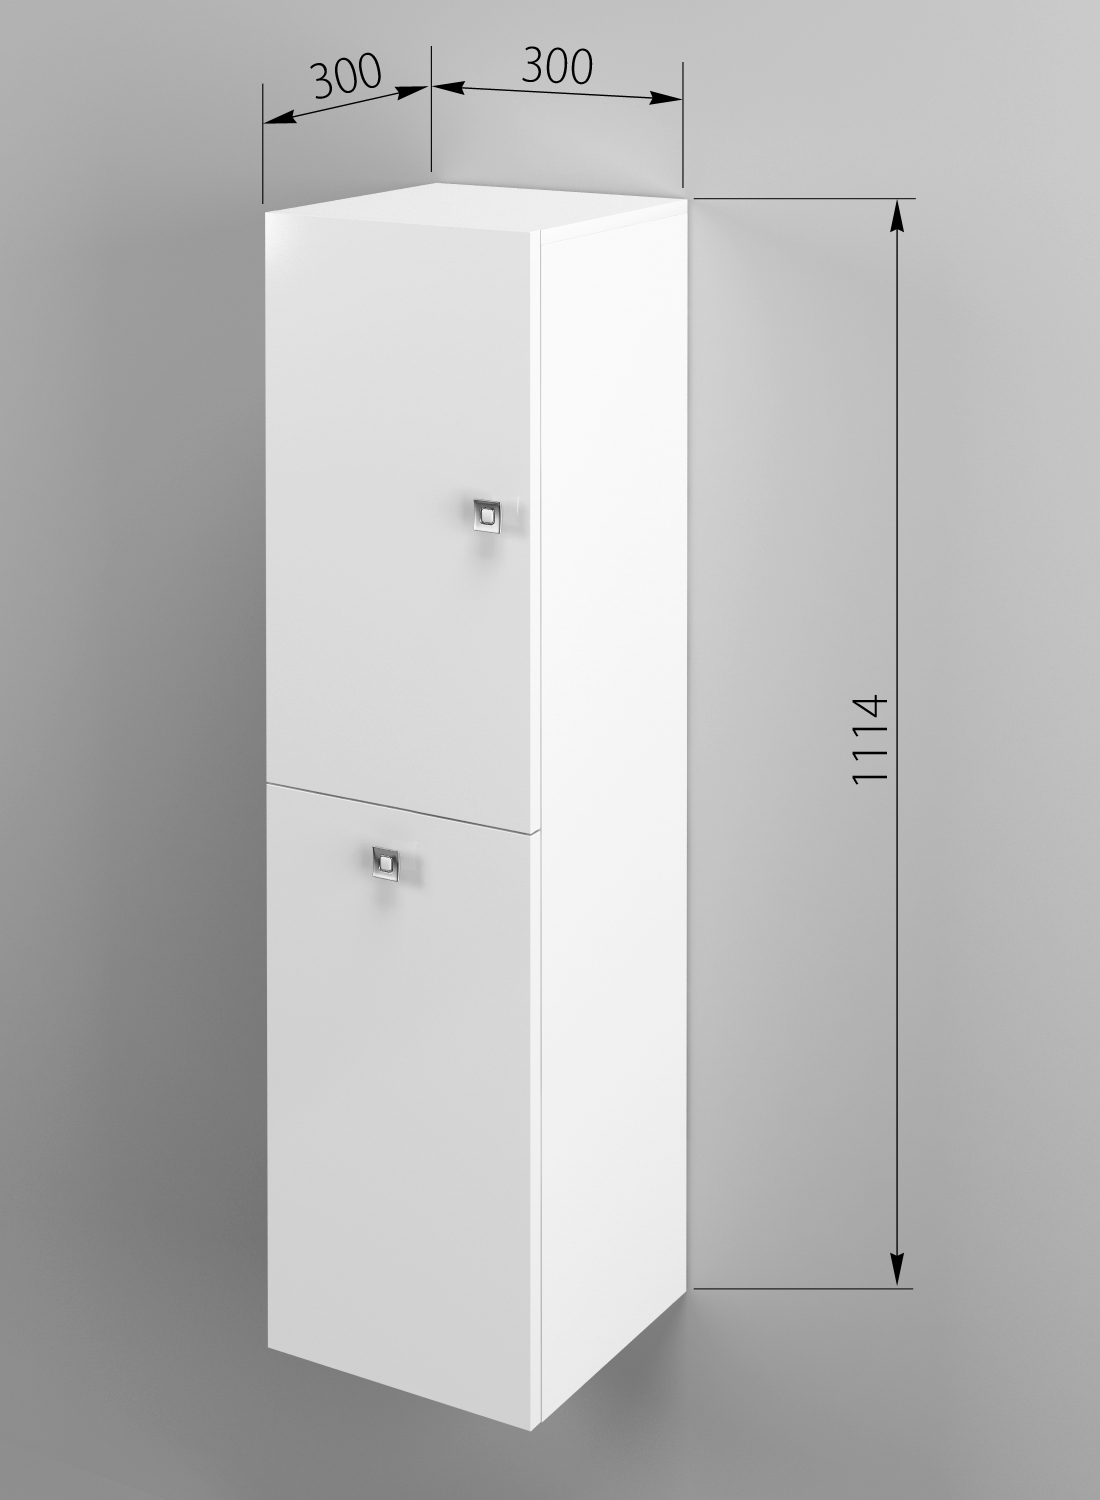 Подвесной высокий шкаф туалетный ПВШТ SANTREK HOME 1 дв. 1 кор. (белый глянец) правый 300*1114*300